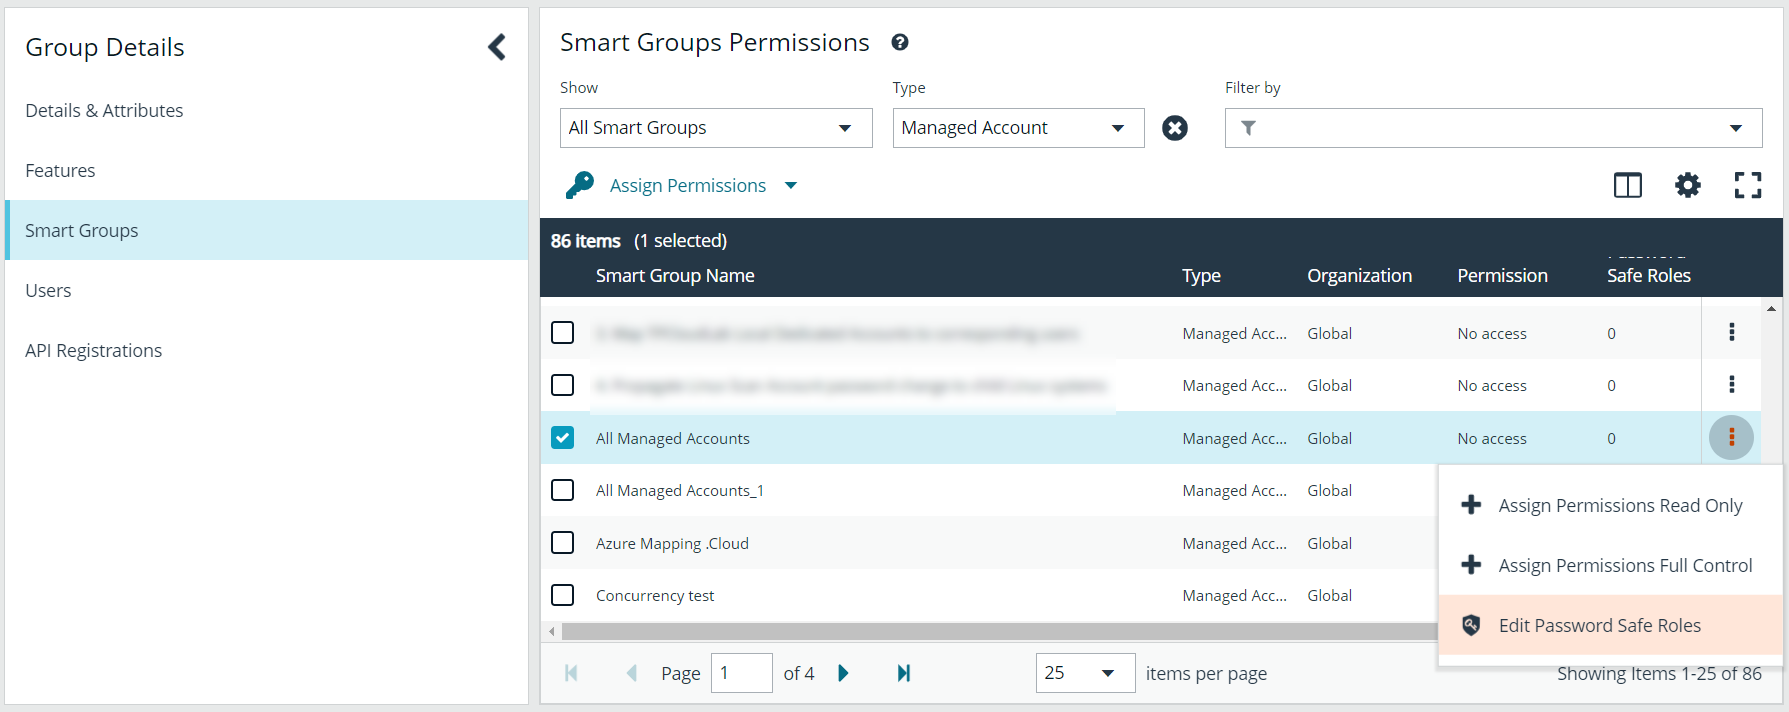 Smart Groups Permissions > Edit Password Safe Roles